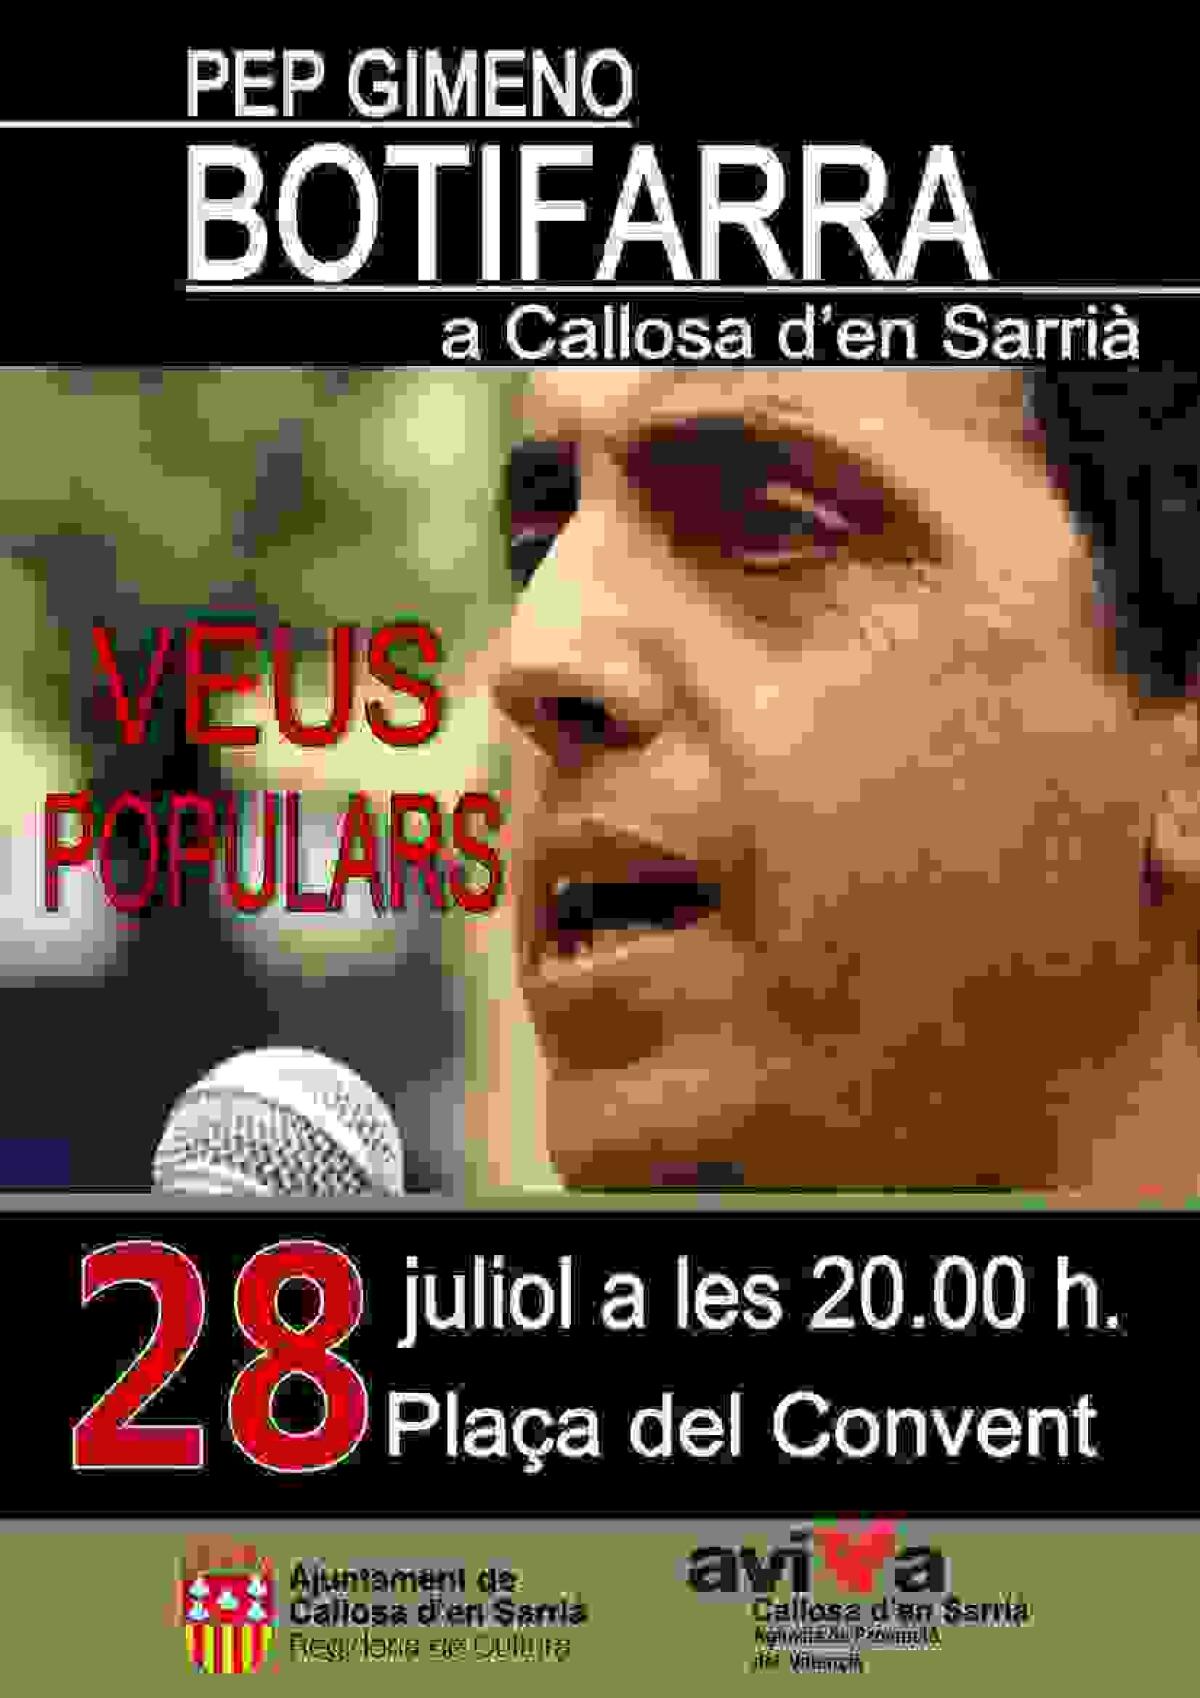 Pep Gimeno ‘Botifarra’ actuará el próximo viernes, 28 de julio, en Callosa d’en Sarrià